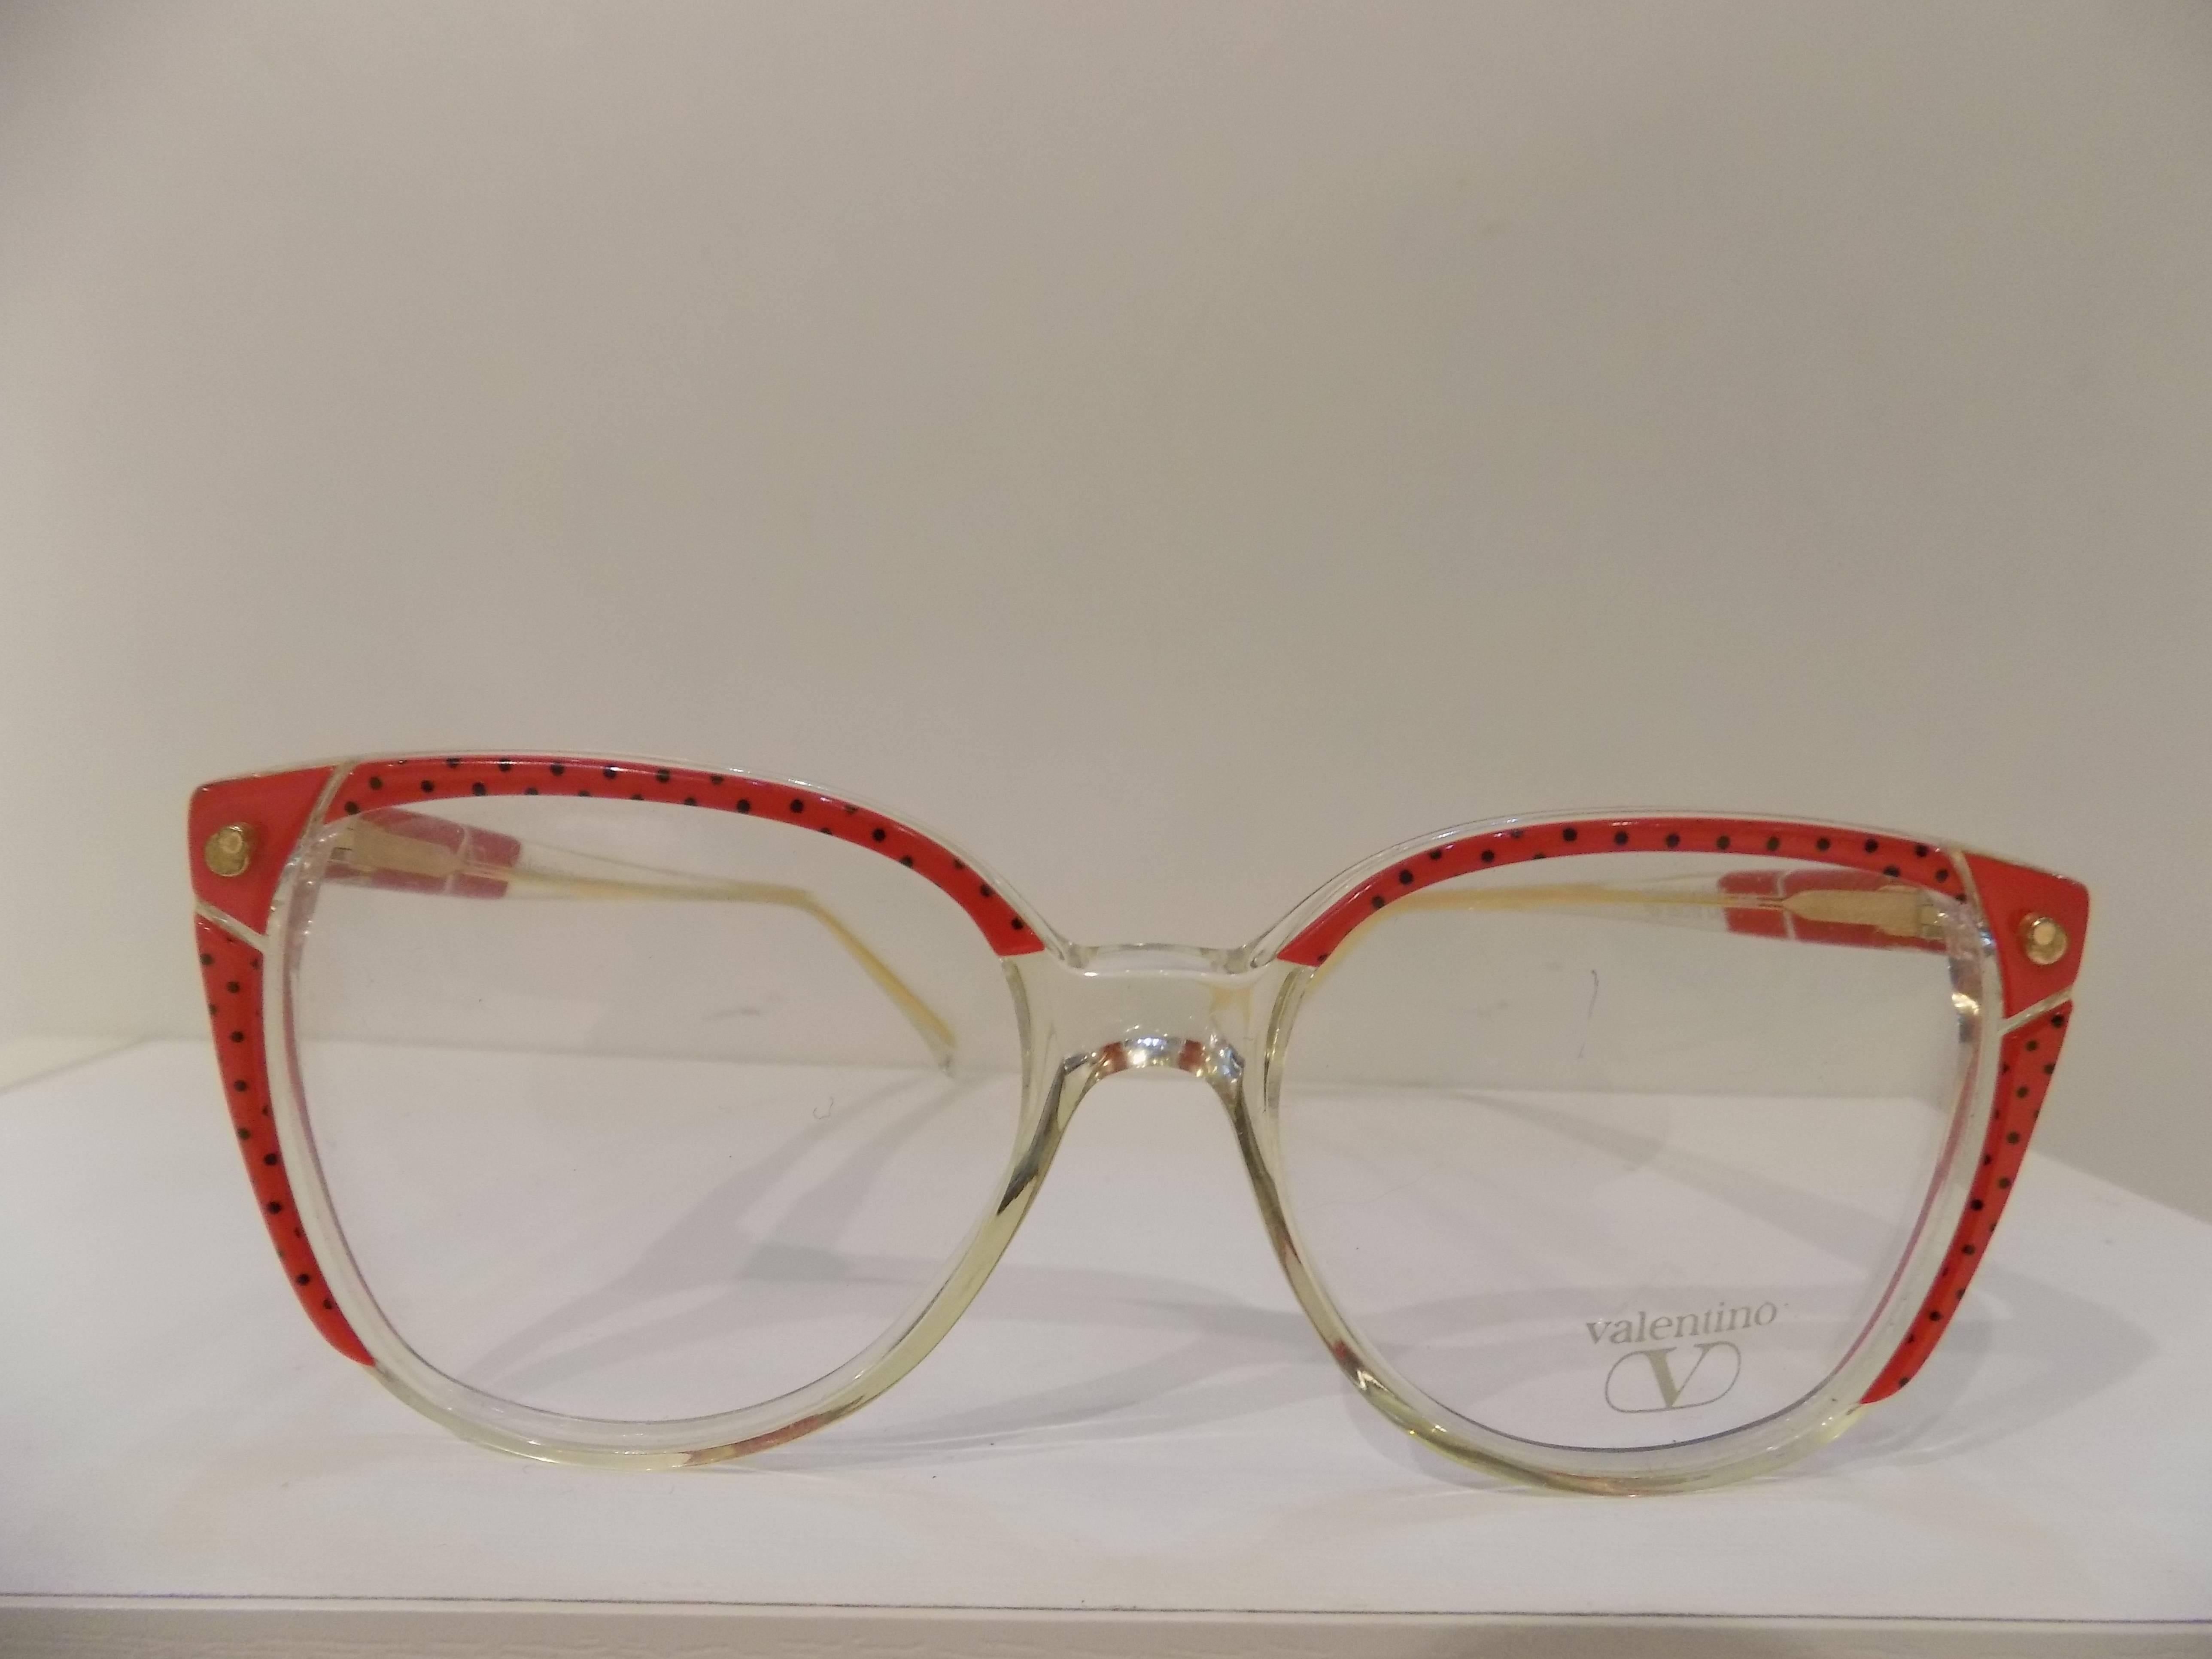 1990s glasses frames